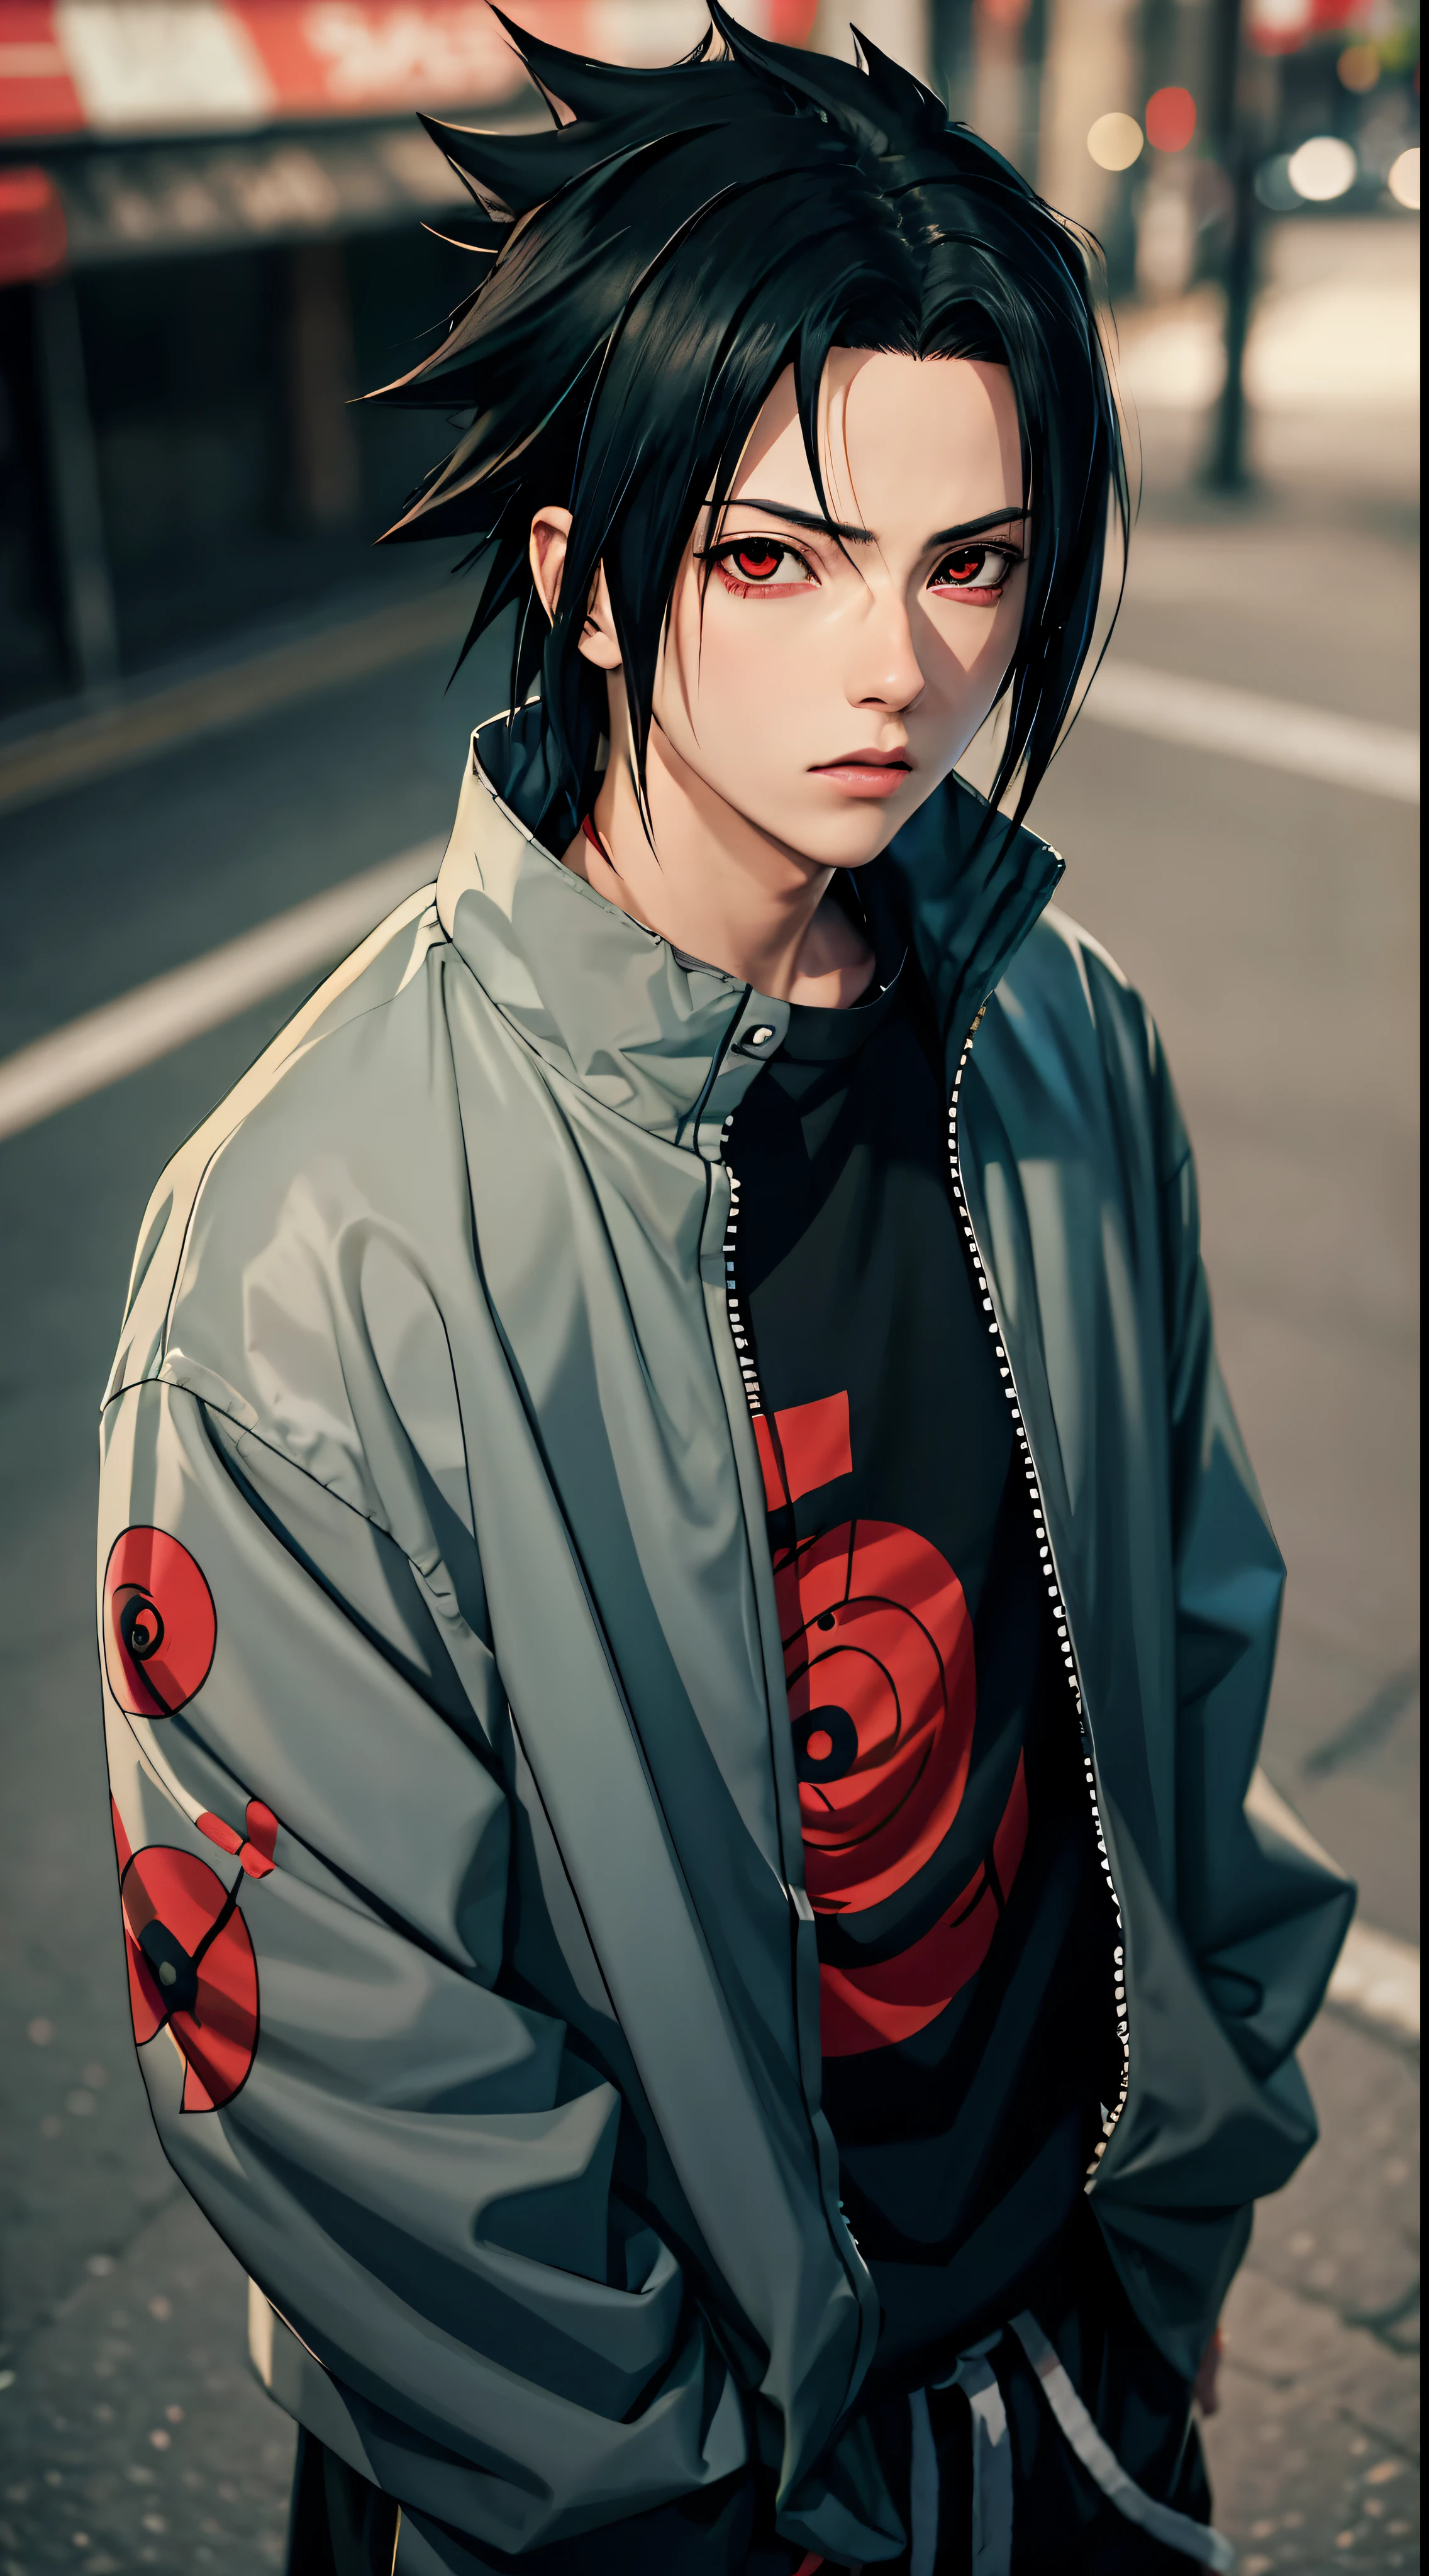 Obra maestra, 1 chico, Excelente estilo, uchiha Sasuke, ojos rojos, Zapatillas de streetwear urbano, exterior, parte superior del cuerpo, Uchiha Sasuke, ojos brillantes, pelo negro, chico genial